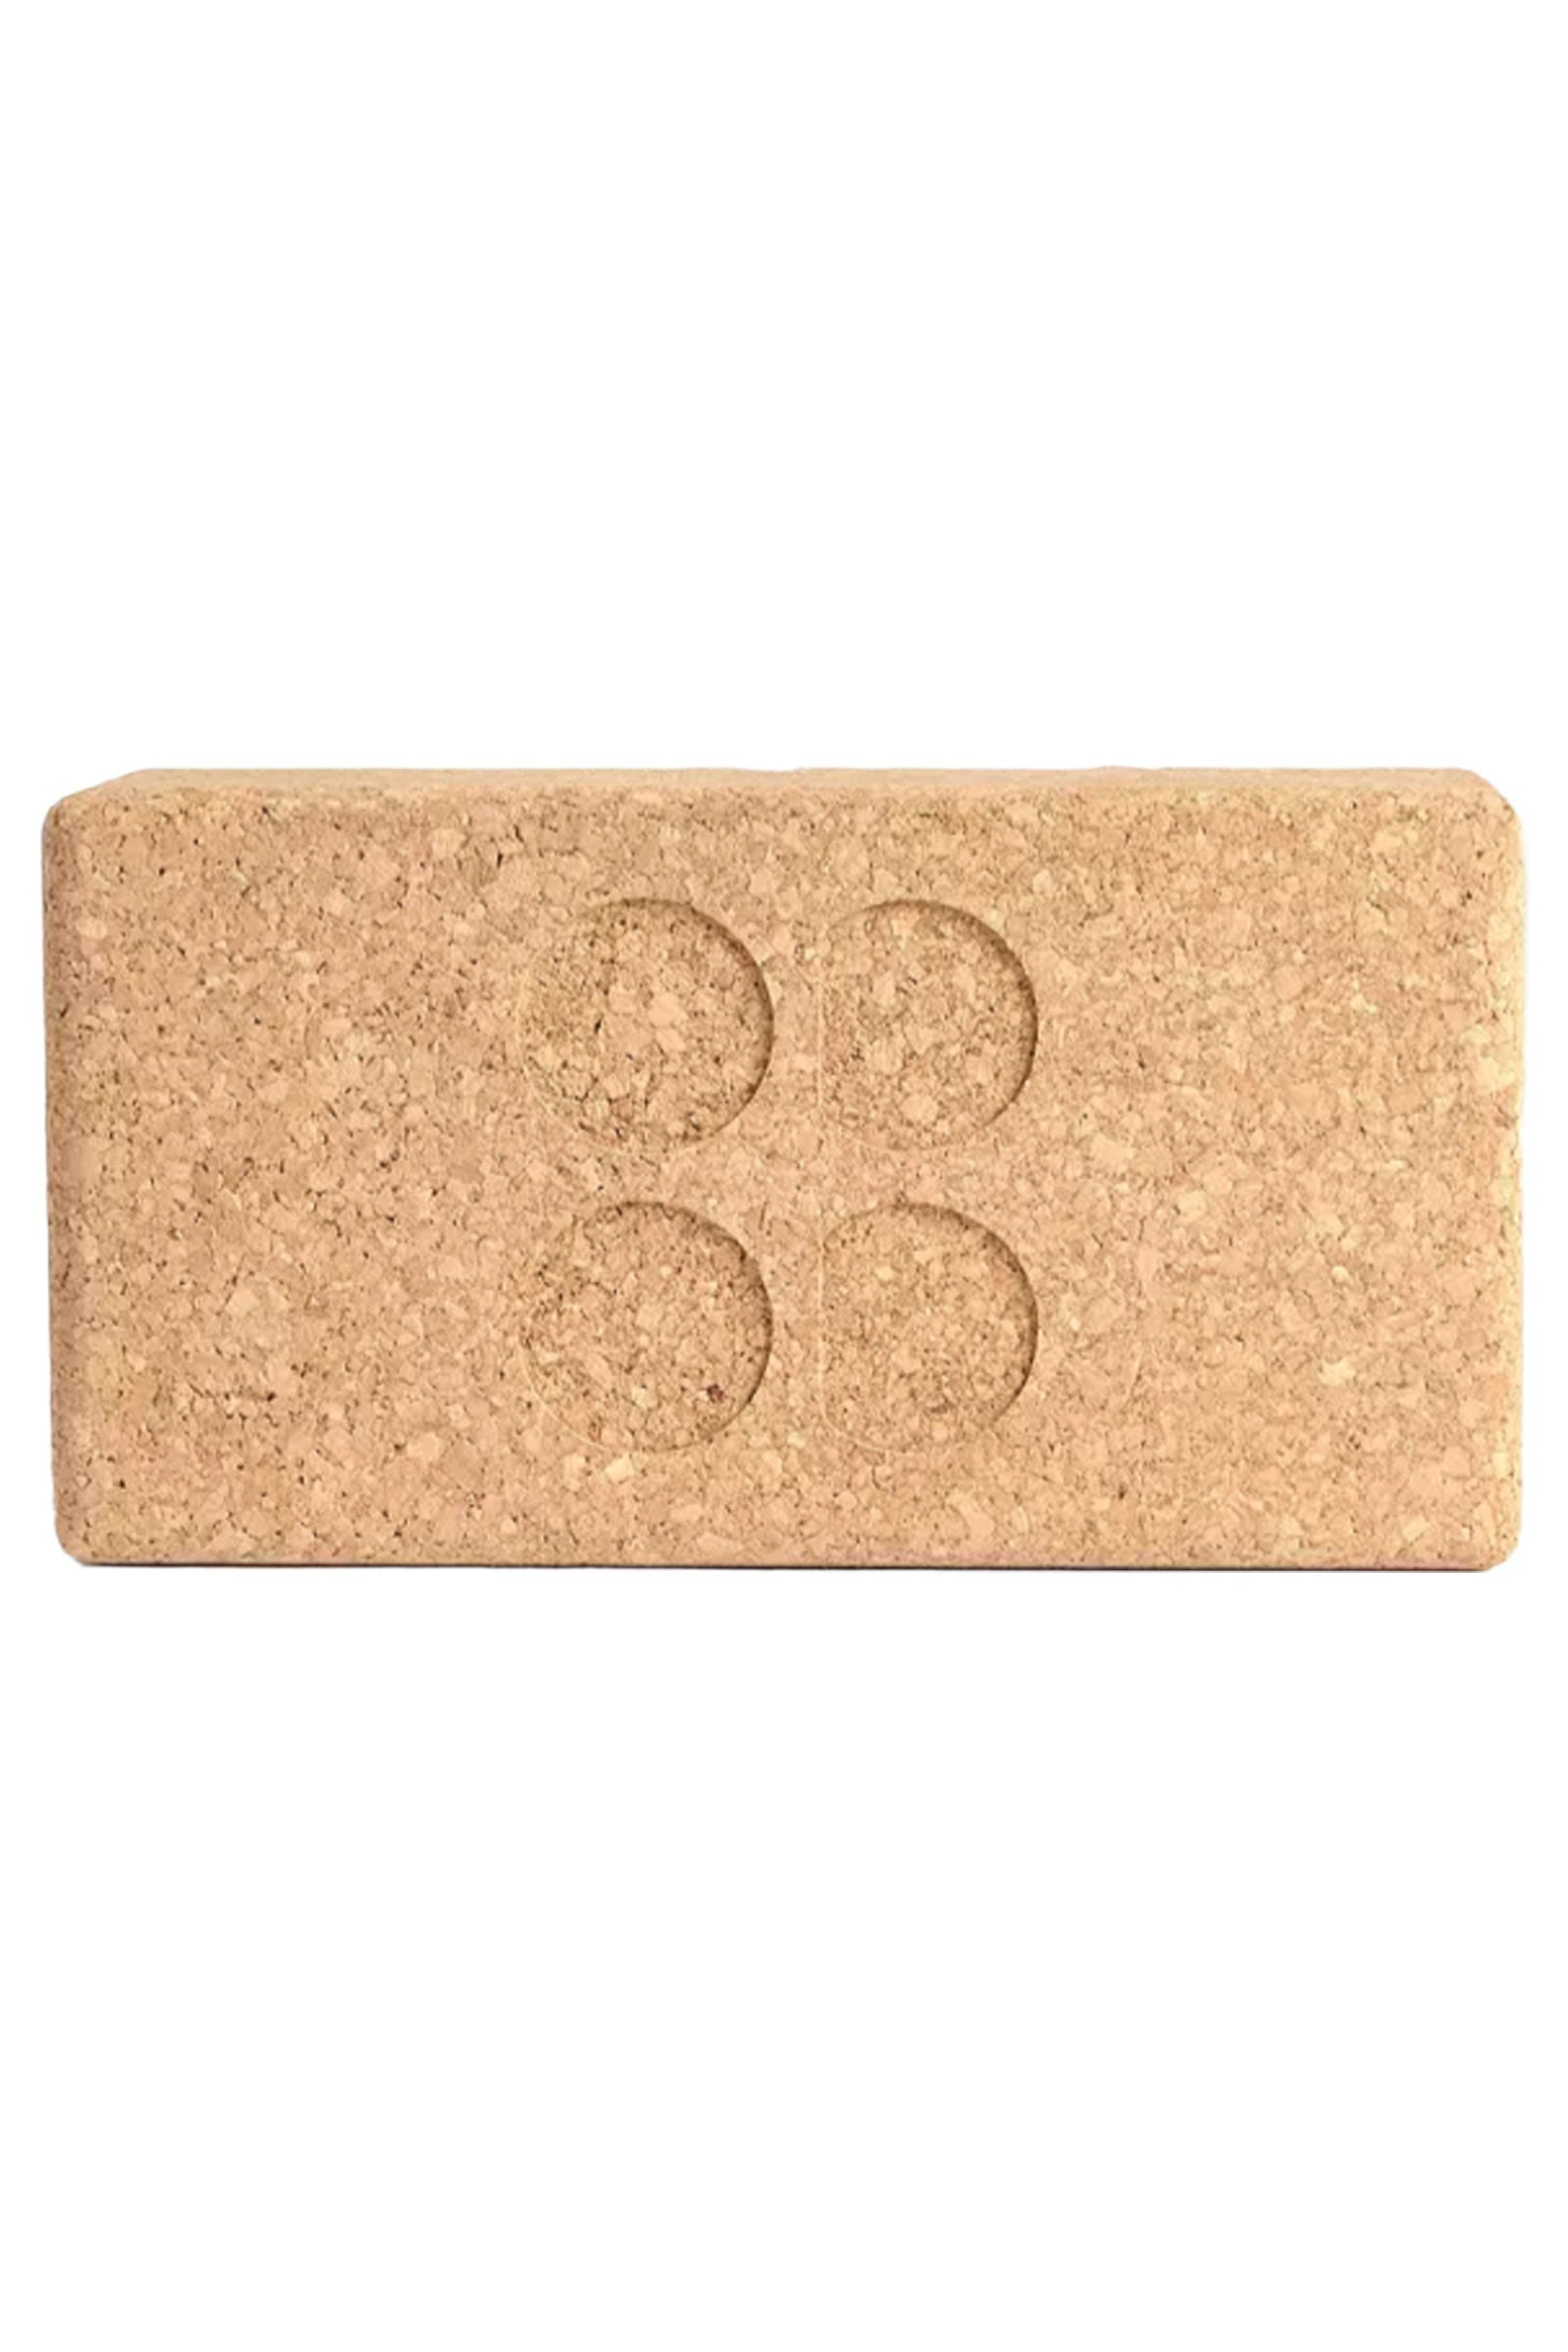 Yogamatters Cork Brick